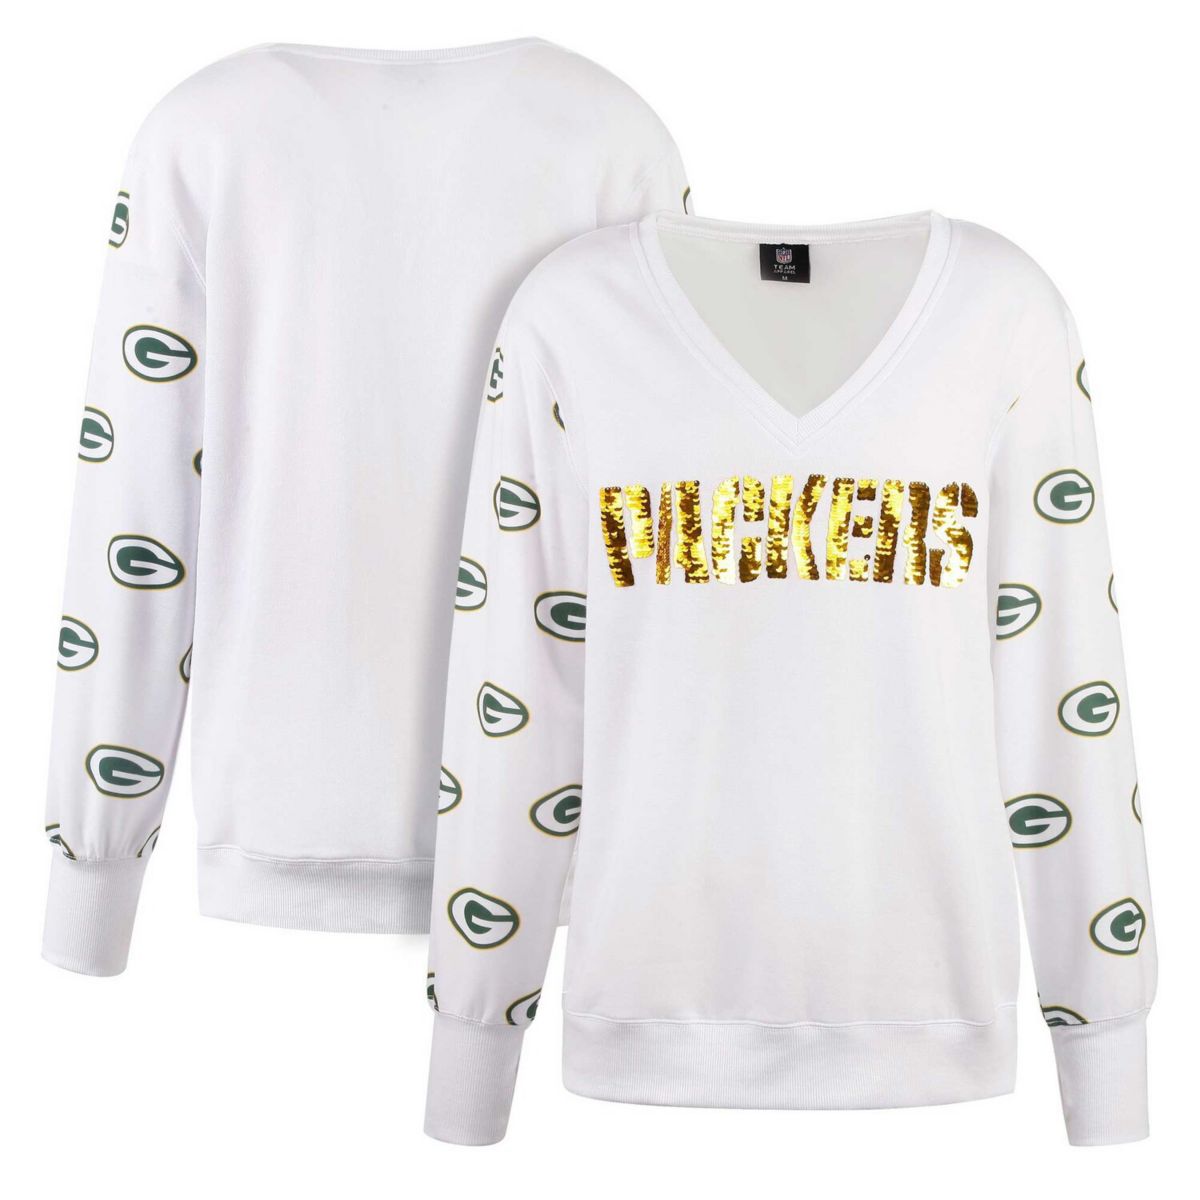 Женская футболка Cuce White Green Bay Packers из флиса с пайетками и v-образным вырезом Cuce